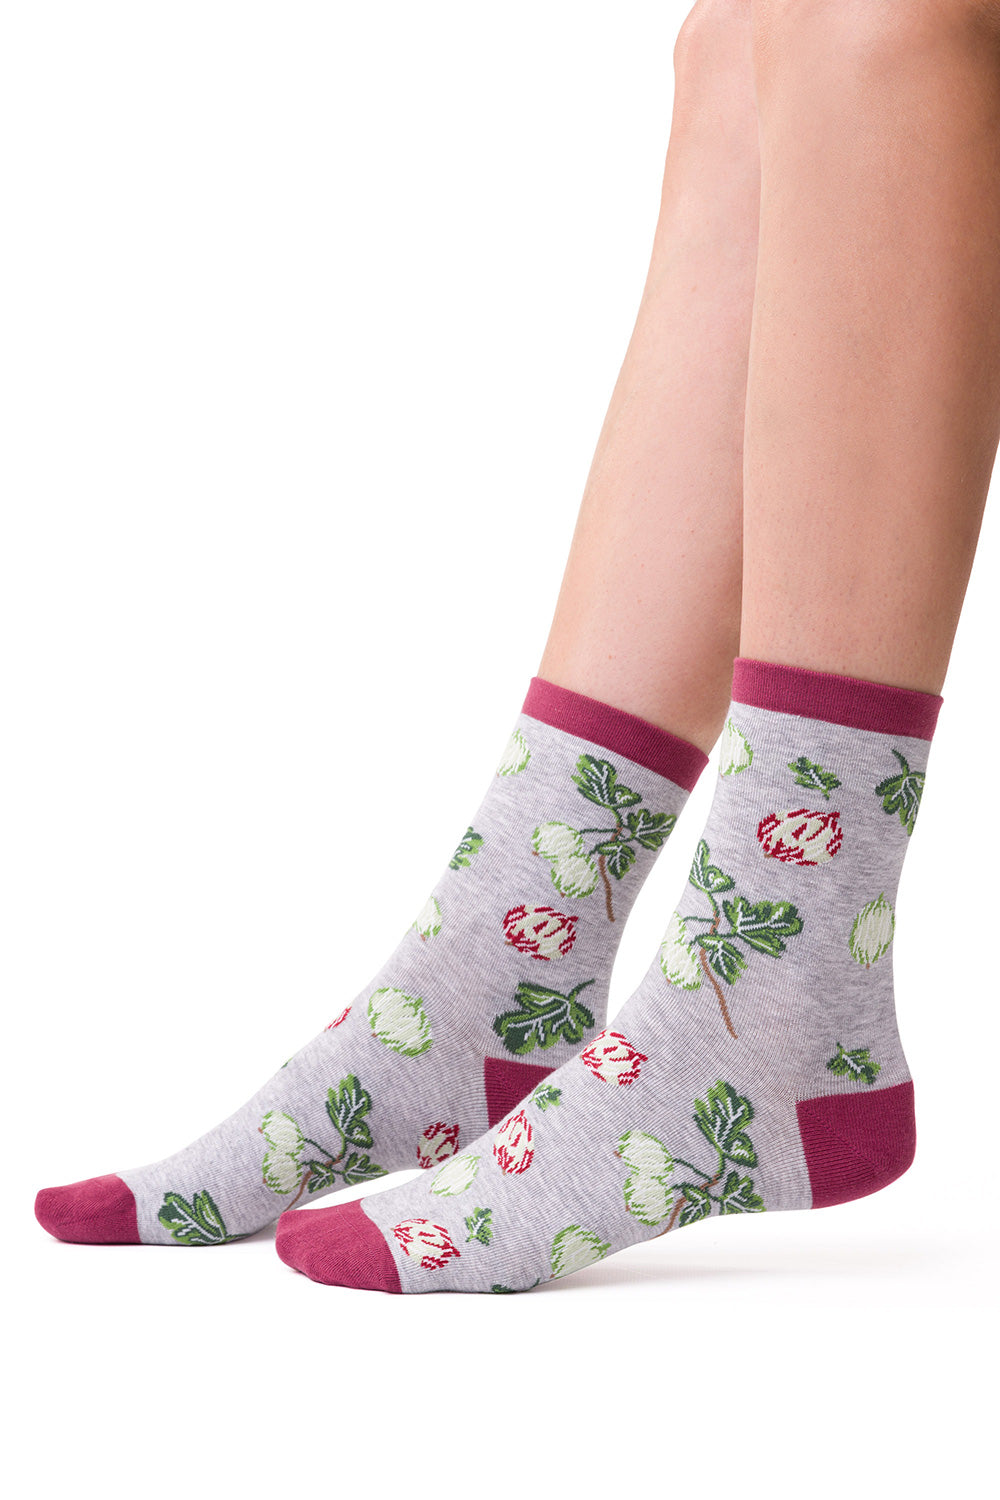 Socks model 173252 Elsy Style Socks